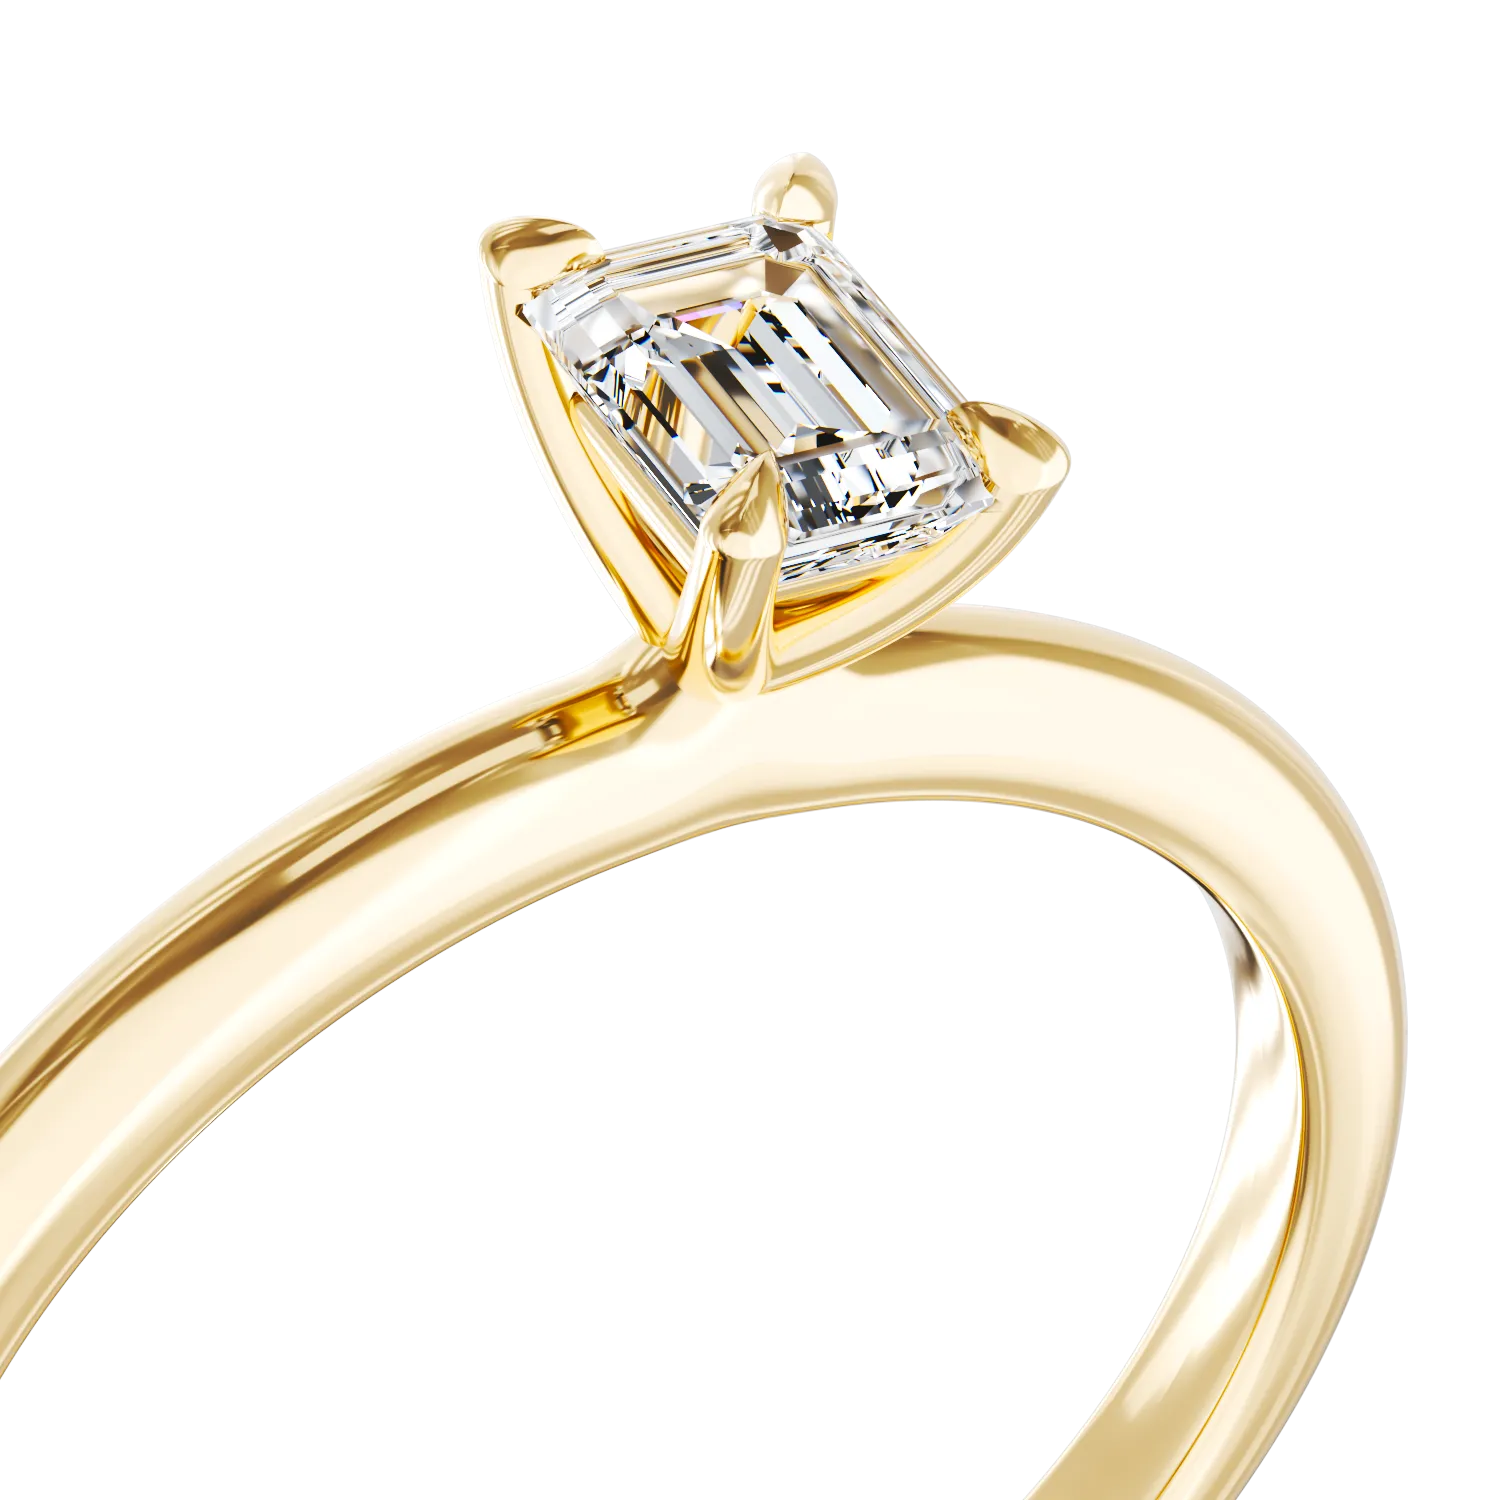 Годежен пръстен от 18K жълто злато с диамант пасианс 0.4кт